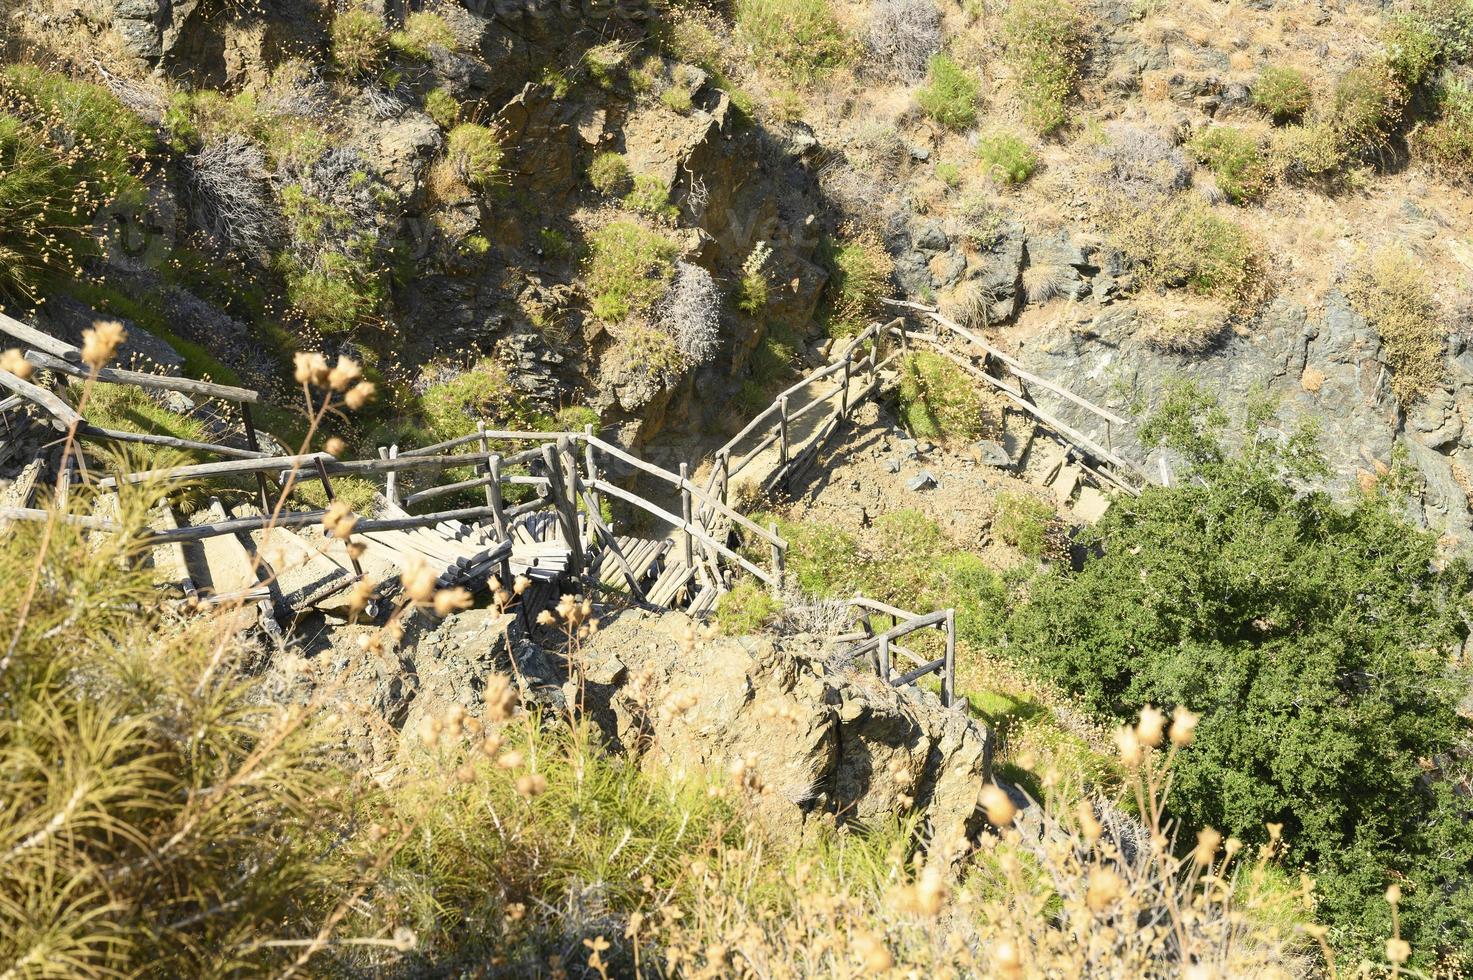 escada de madeira caseira antiga que percorre rochas em um desfiladeiro na montanha foto